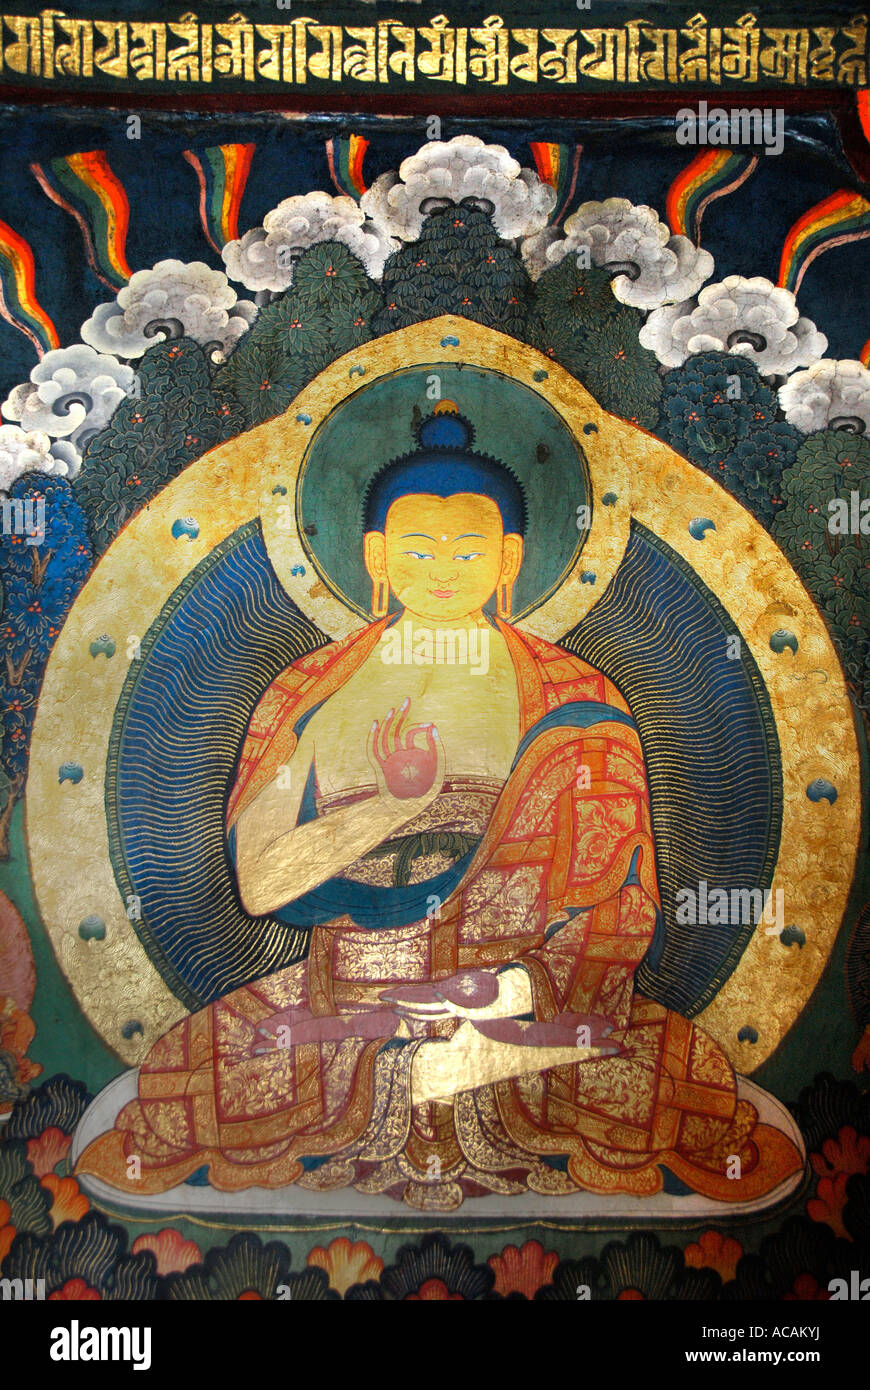 Le bouddhisme tibétain Bouddha peinture murale Lhasa Jokhang Tibet Chine Banque D'Images